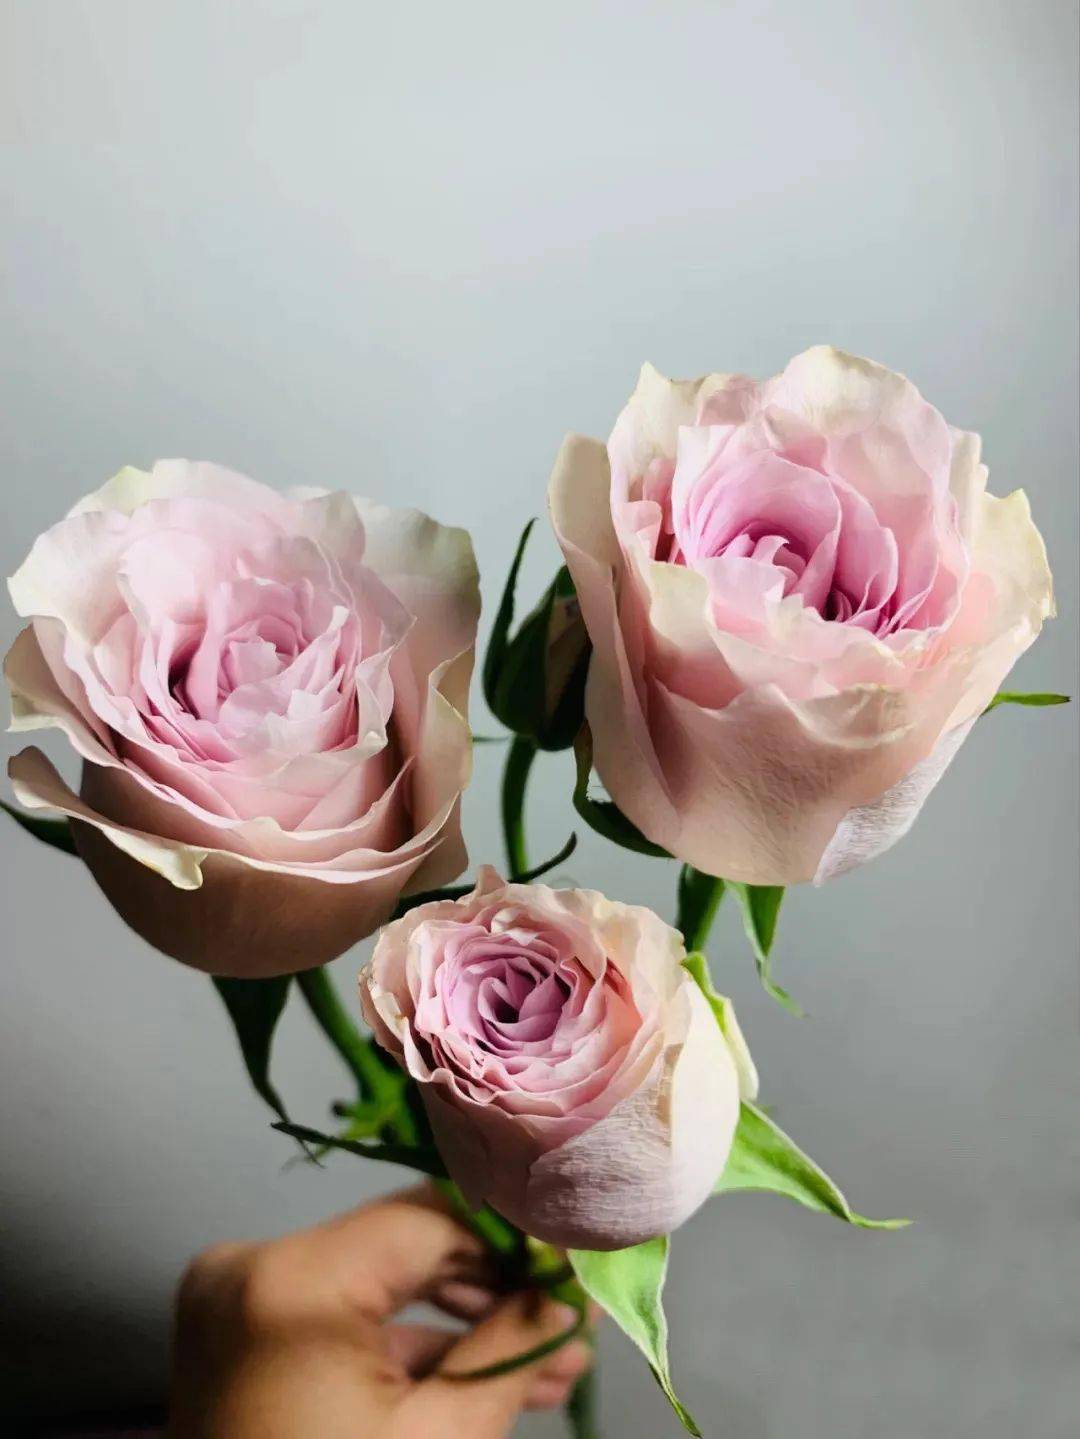 粉钻的花苞比粉红雪山更精致,未完全开放的粉钻玫瑰花瓣层层包裹